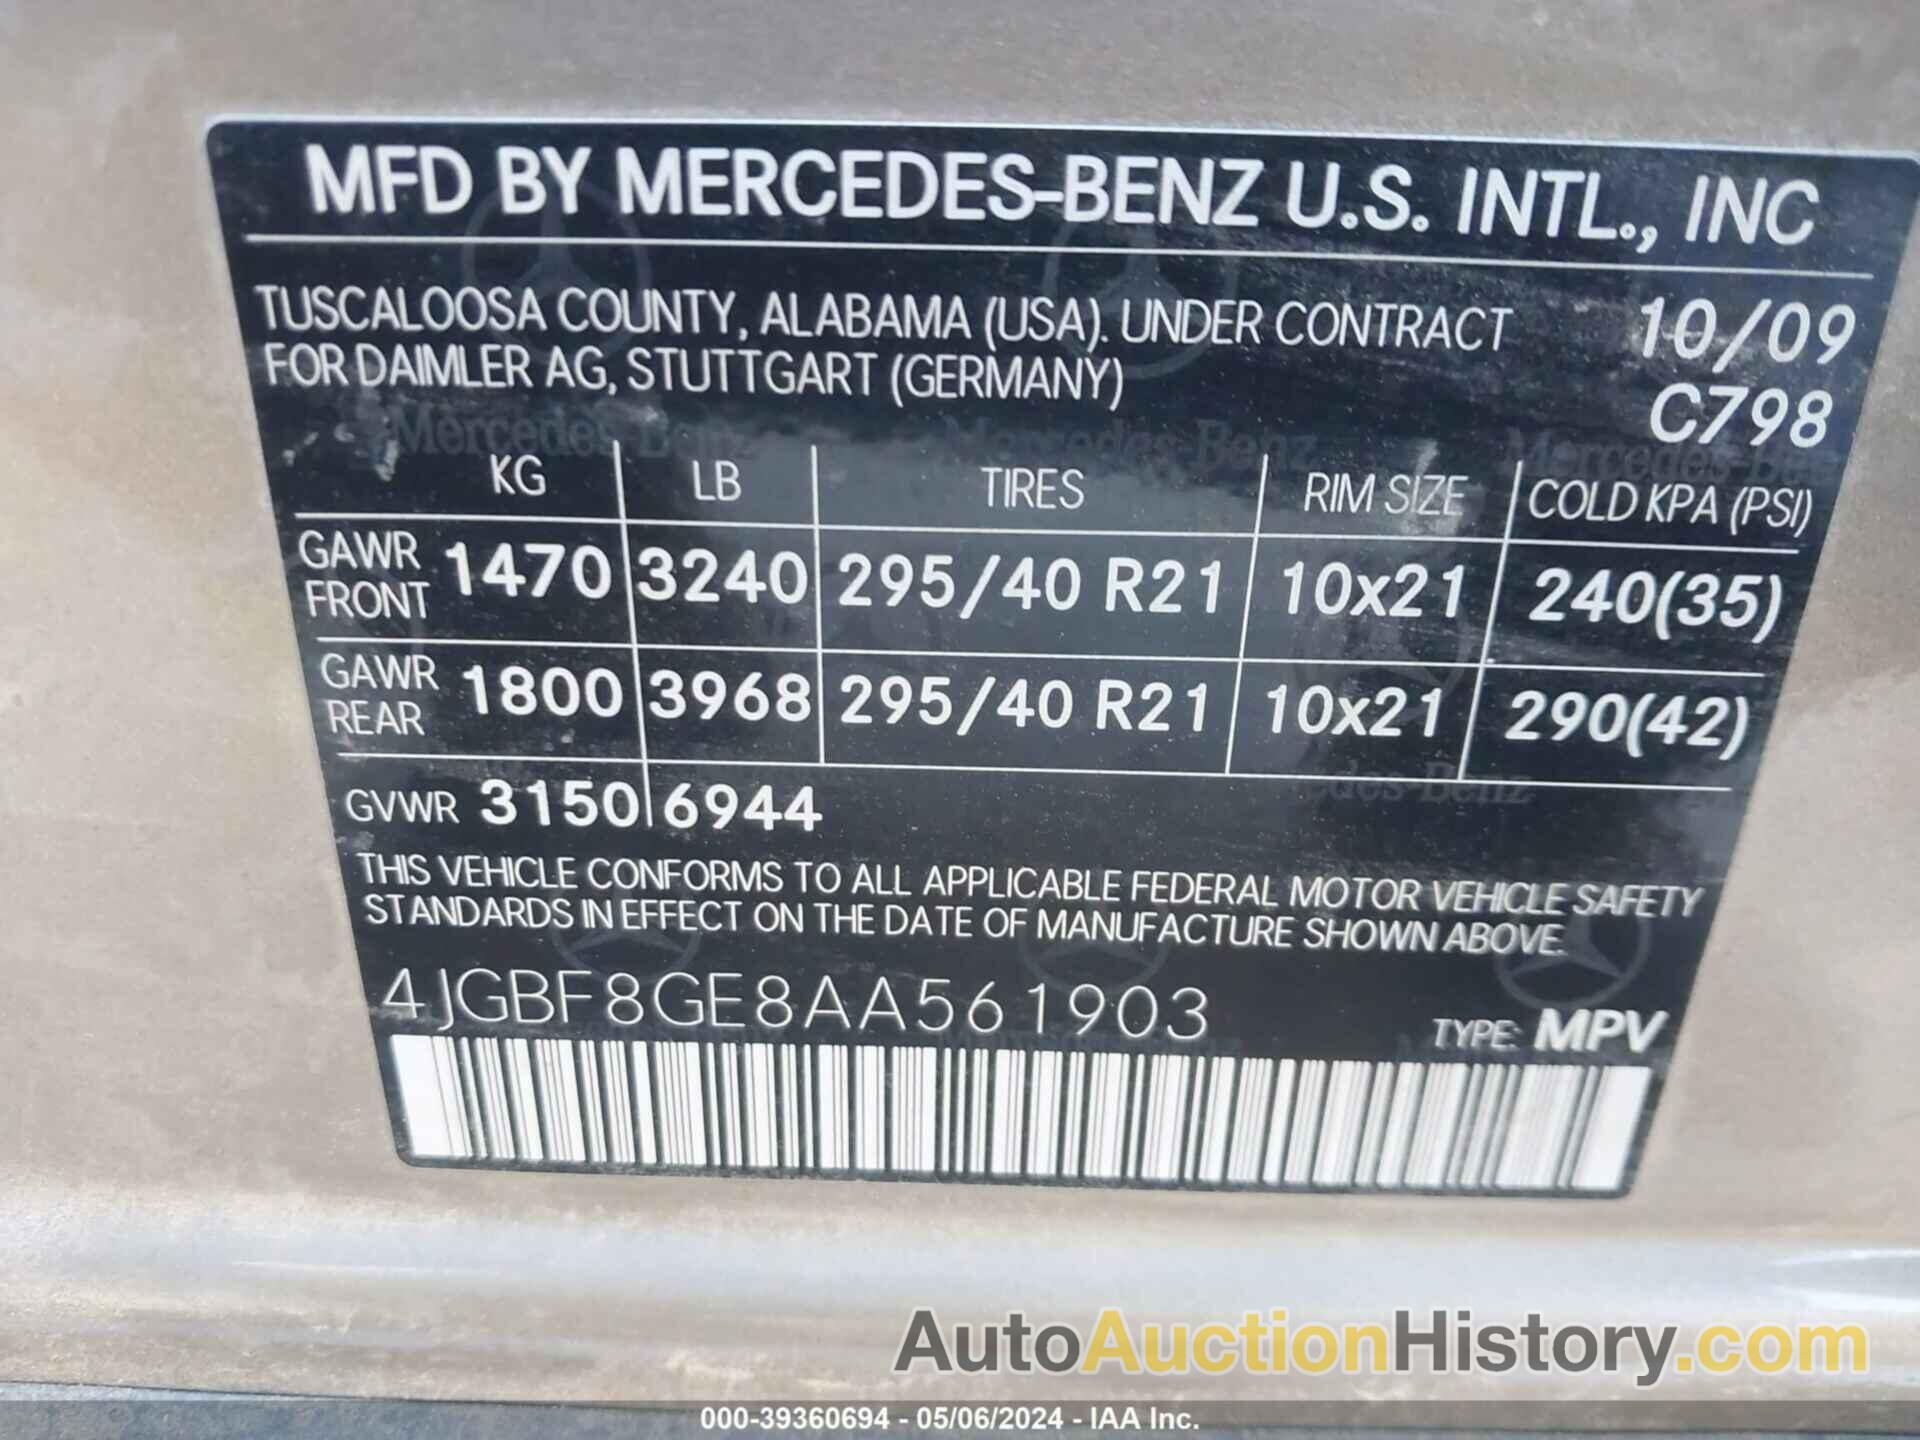 MERCEDES-BENZ GL 550 4MATIC, 4JGBF8GE8AA561903